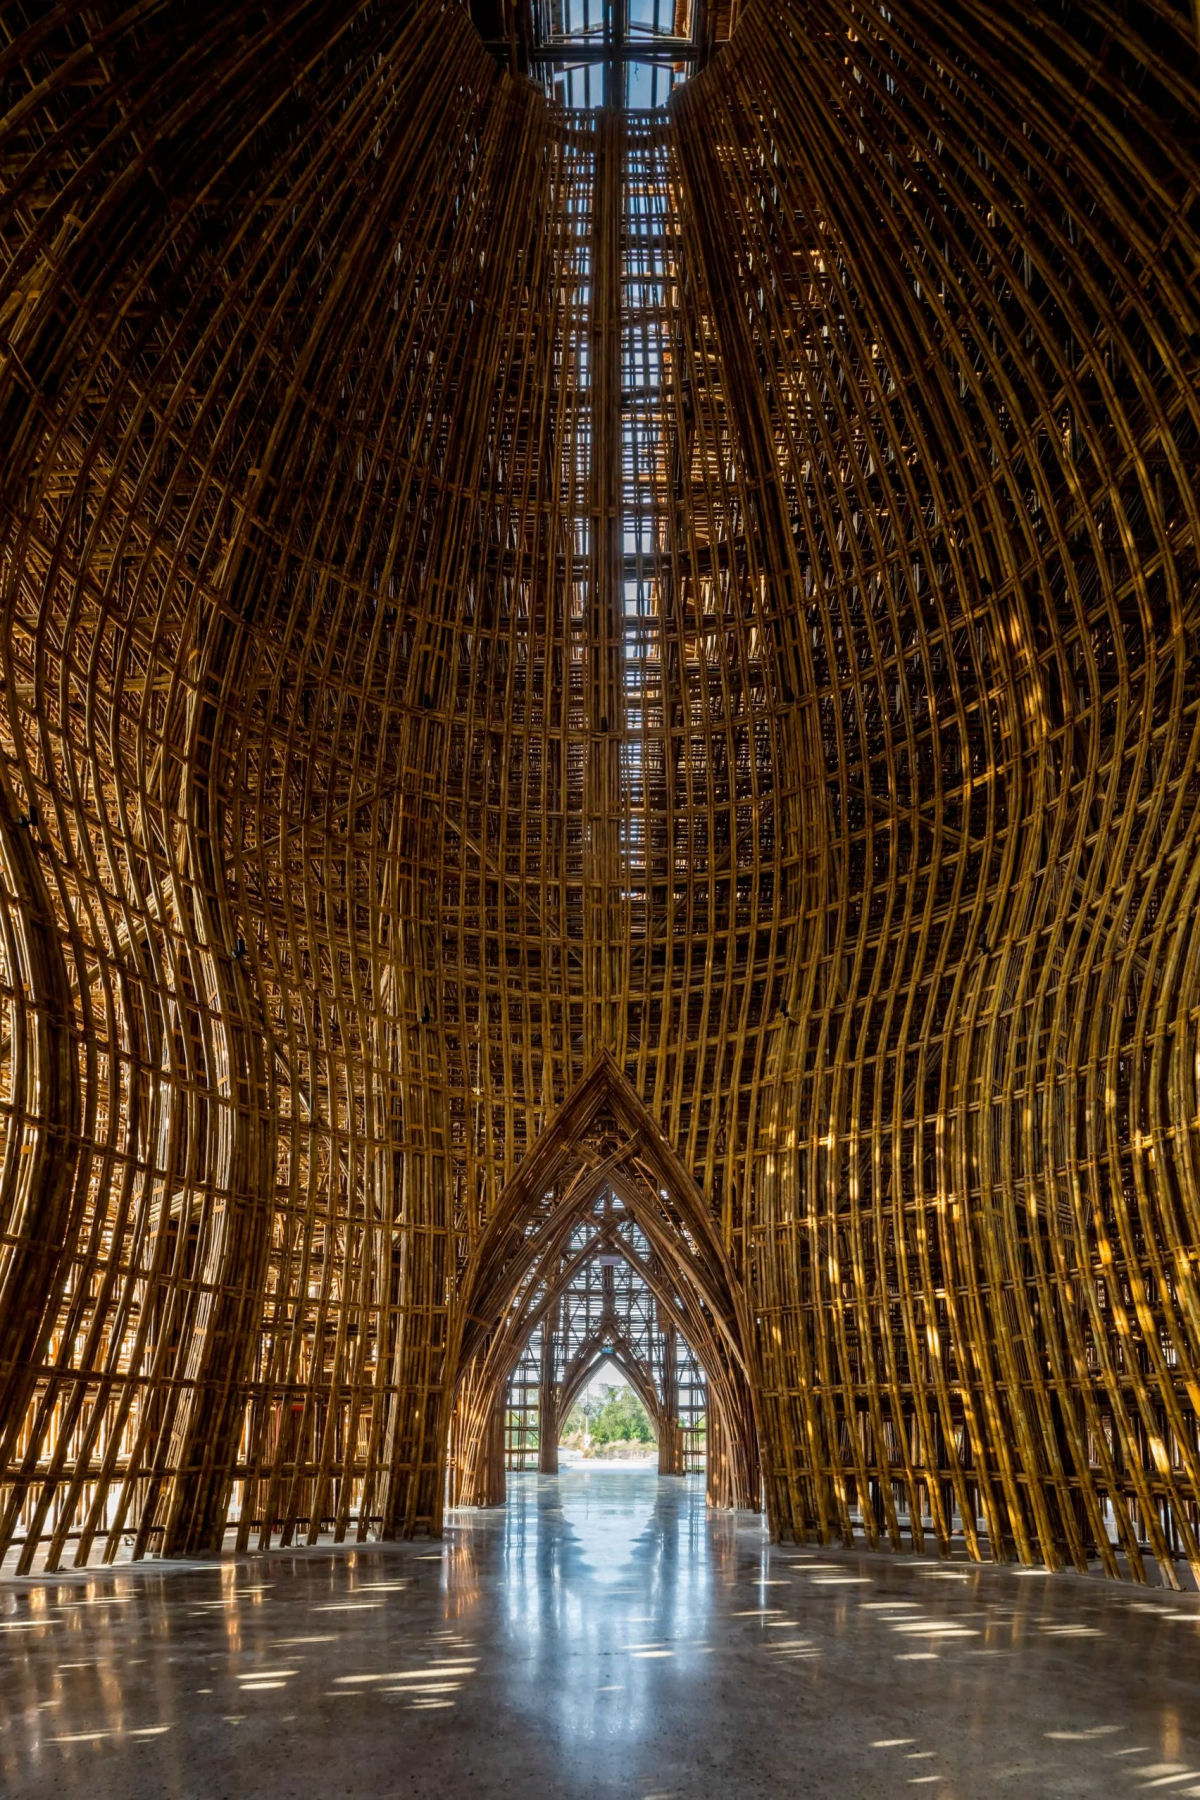 Centro de boas-vindas iluminado no Vietnã foi construído com 42.000 colmos de bambu 02